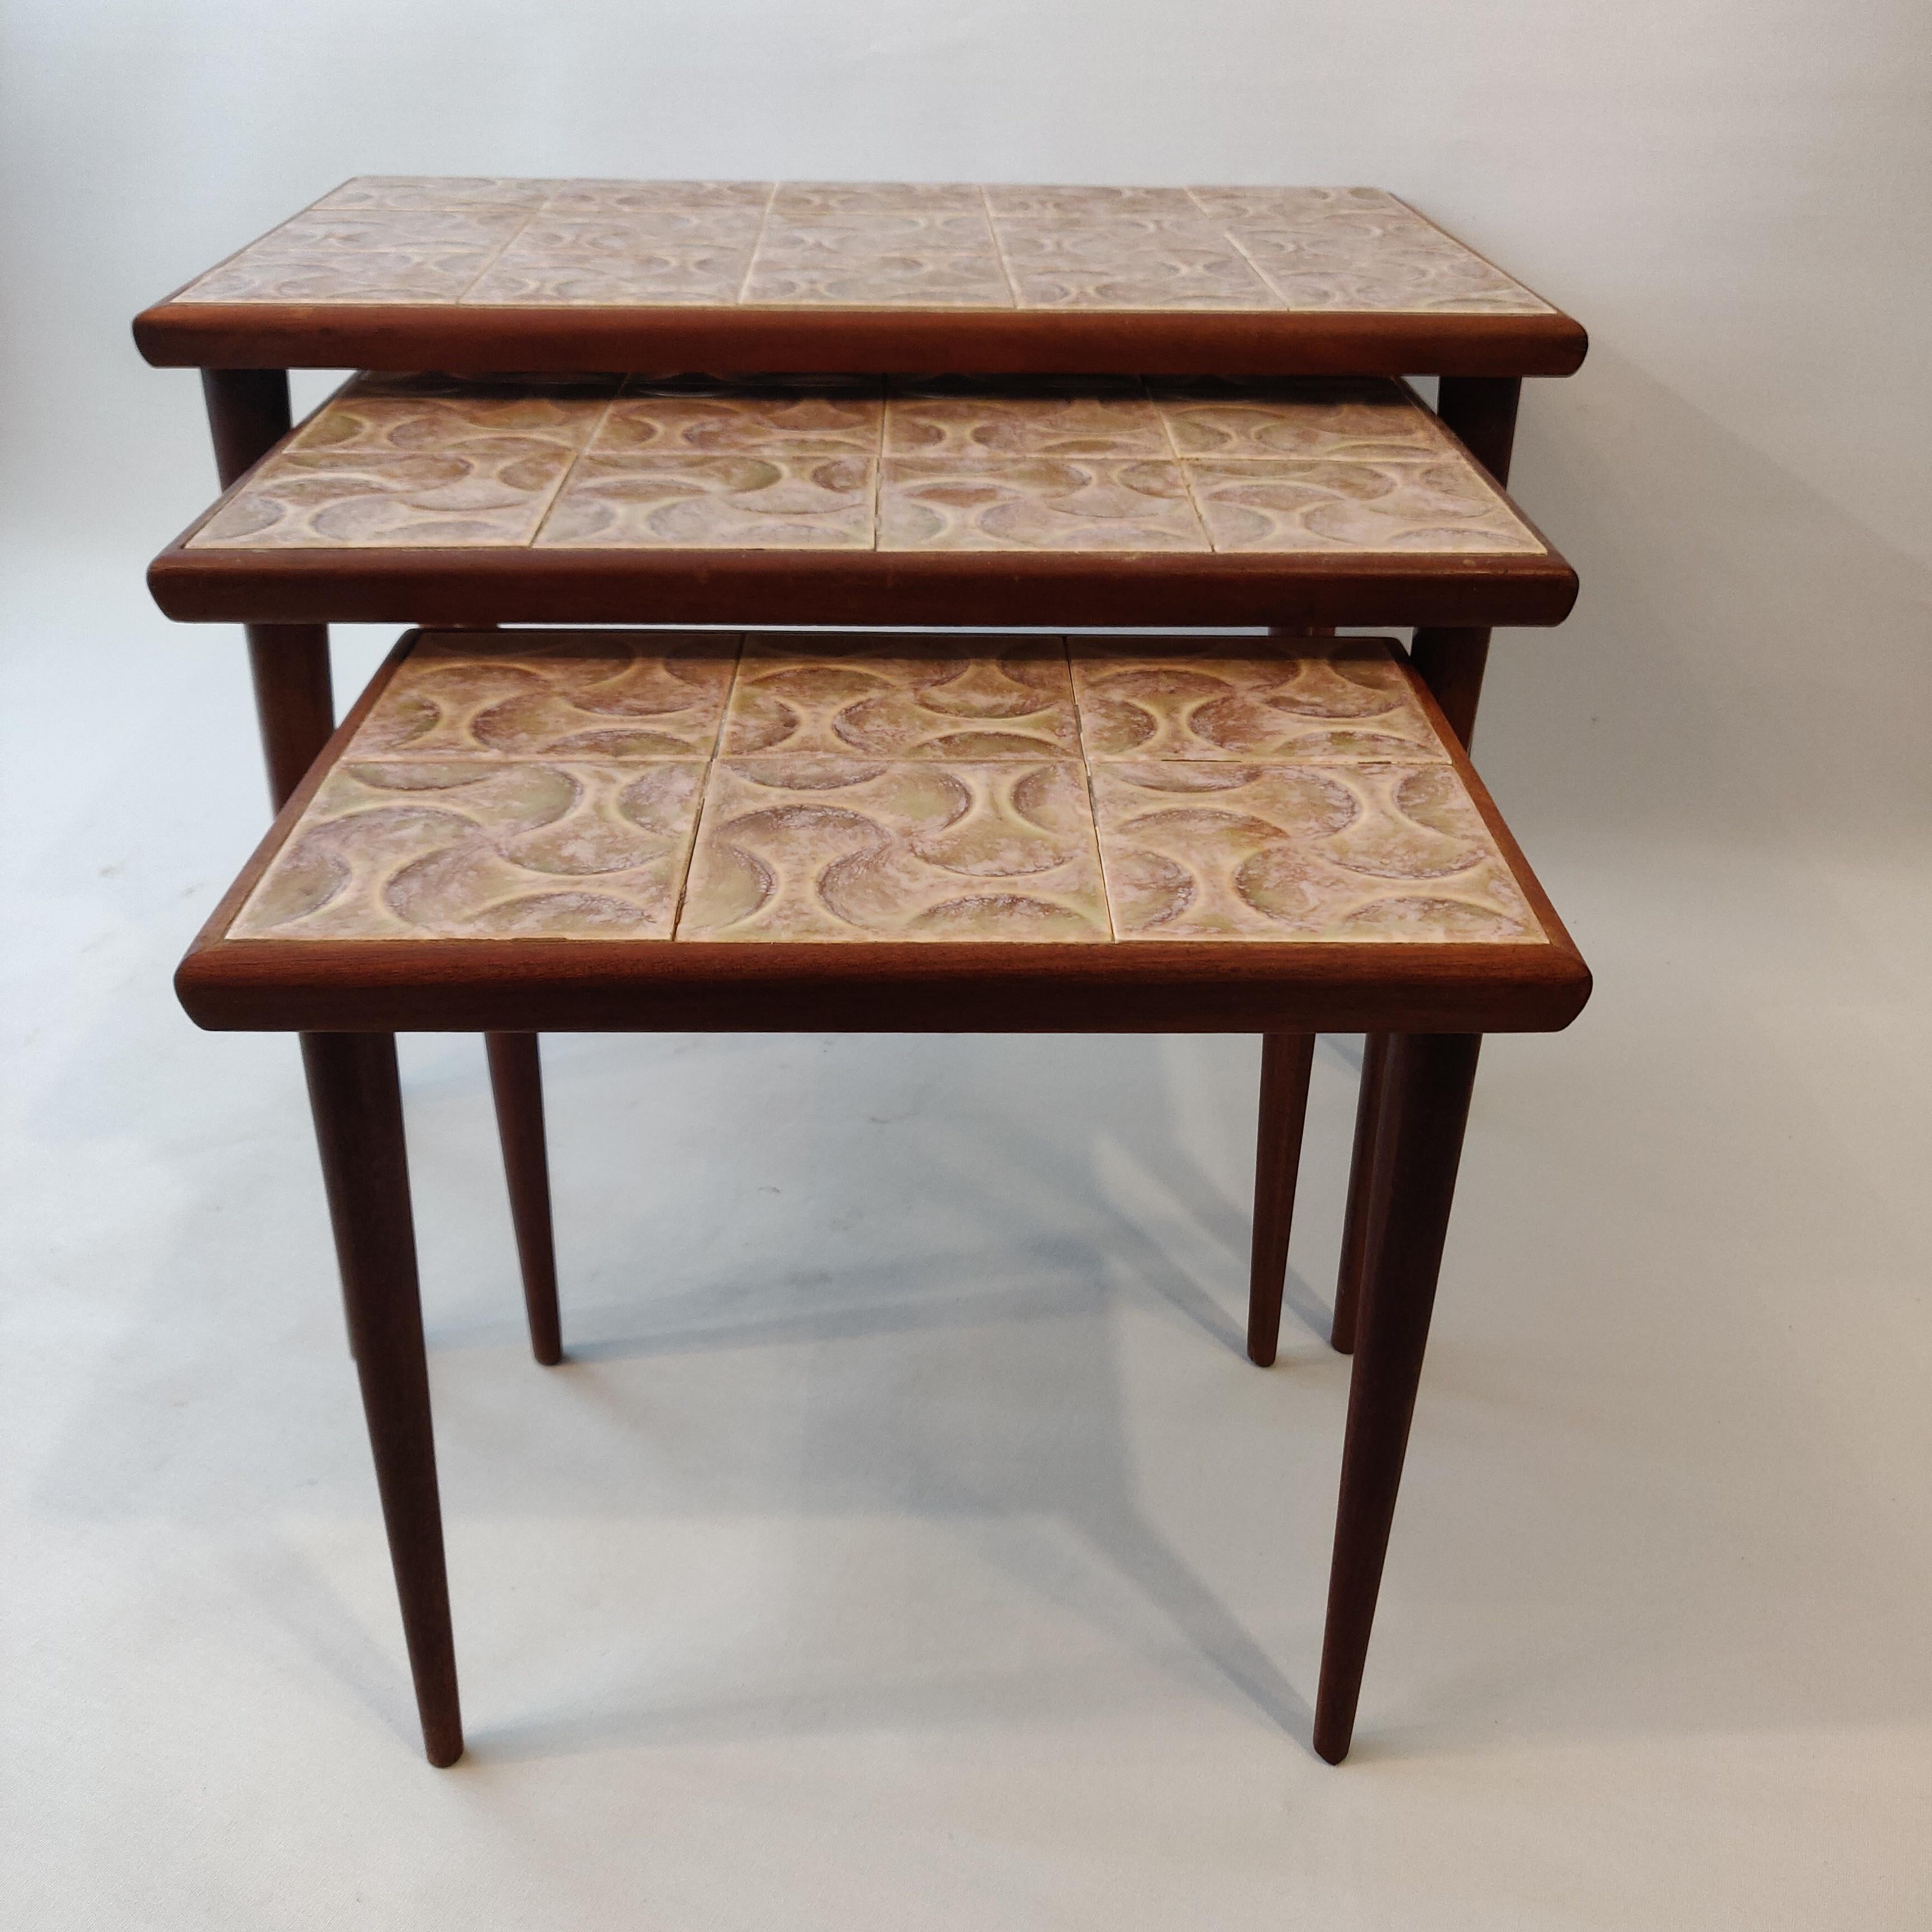 Satz von drei dänischen Nisttischen aus der Mitte des Jahrhunderts, 1960er Jahre.
Das Gestell der Tische ist aus Teakholz gefertigt, das dem Rahmen seine schöne tiefbraune Farbe verleiht. Die Tischplatte ist mit Keramikfliesen in verschiedenen